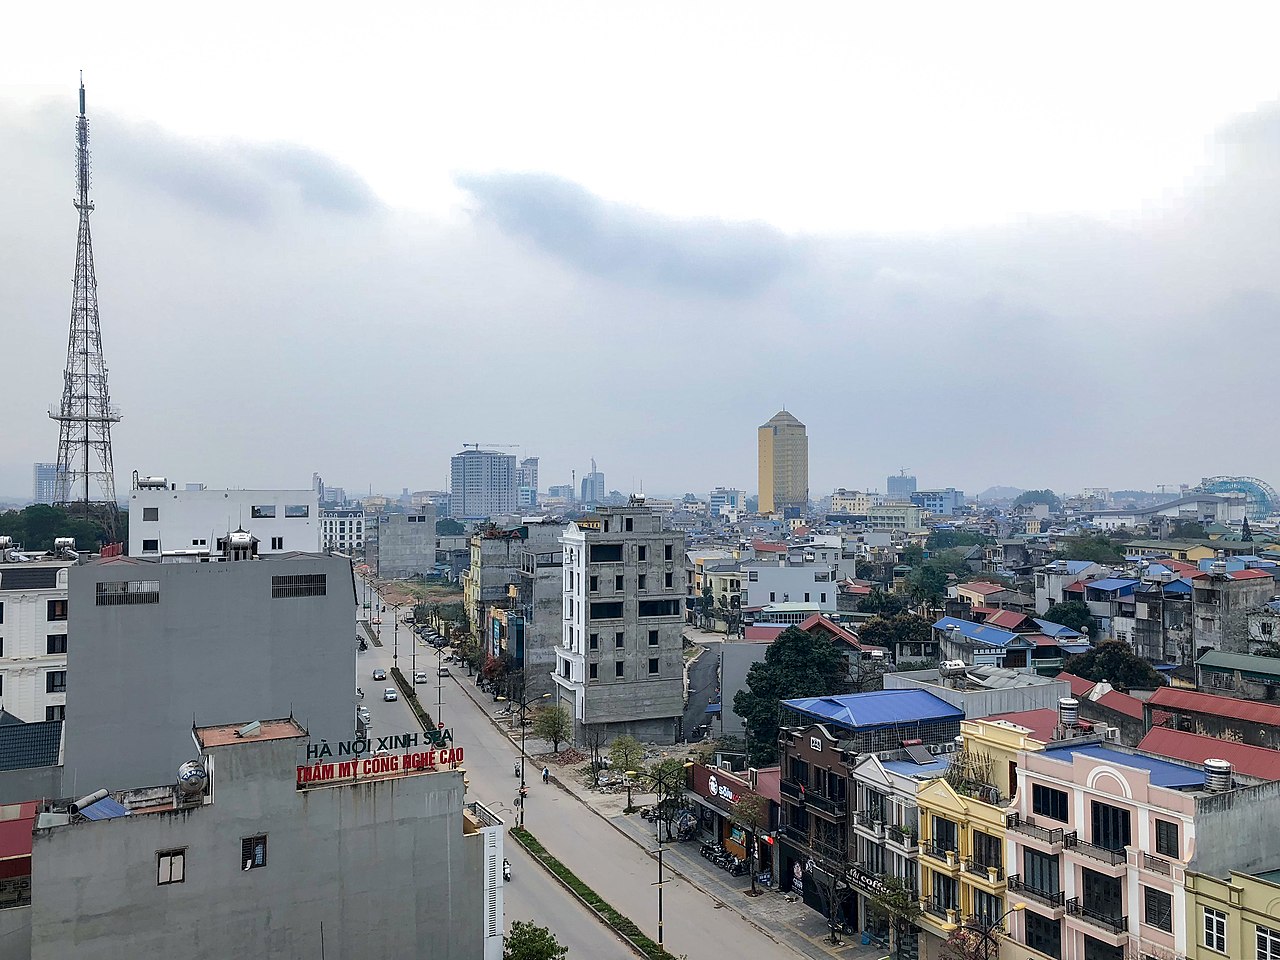 Trung tâm thành phố Thái Nguyên đầu năm 2018.jpeg